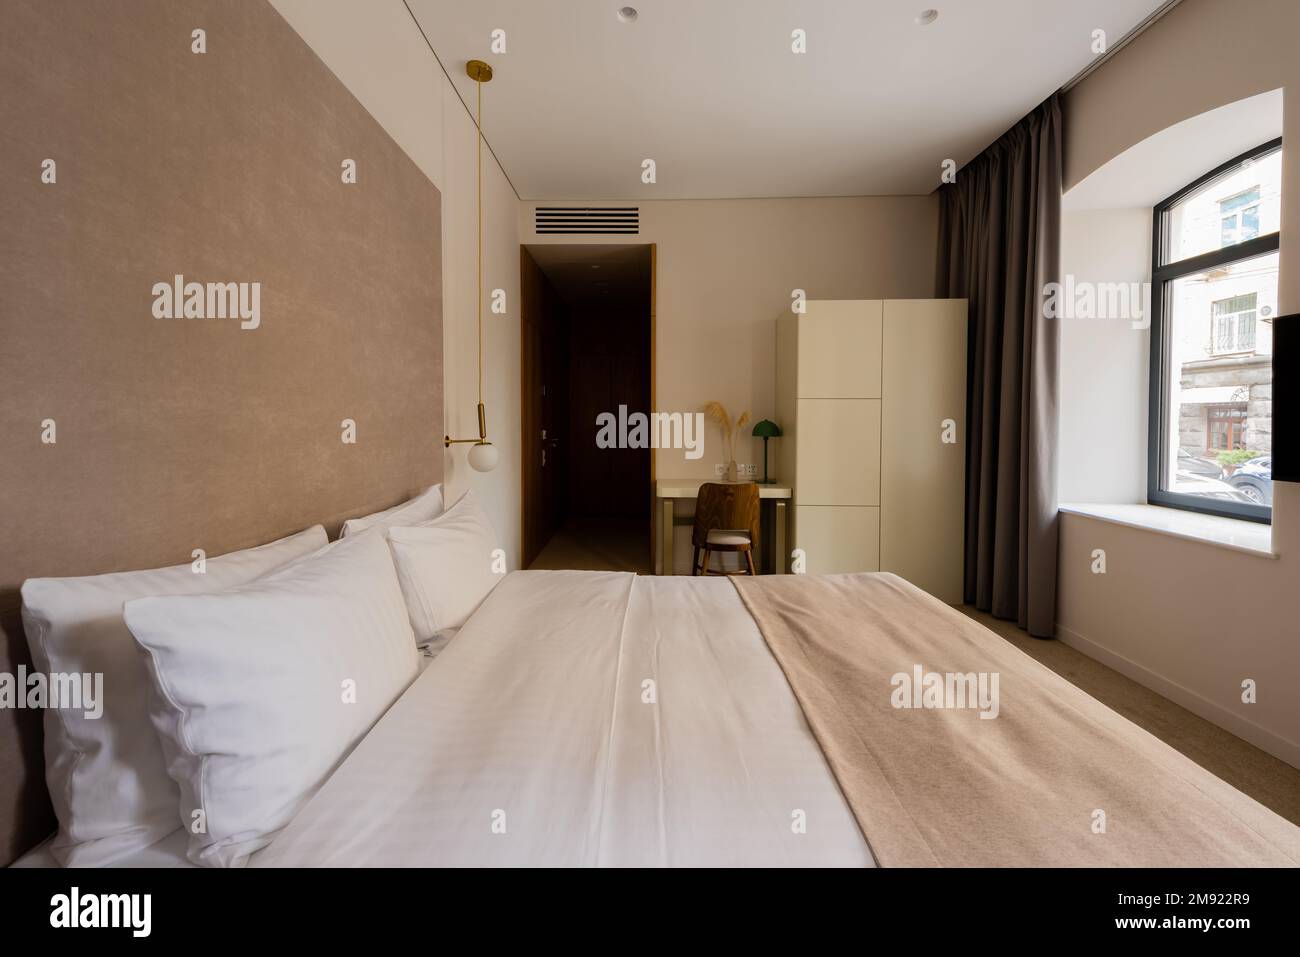 Komfortables Bett mit weißer Bettwäsche neben Schreibtisch und Stuhl im modernen Hotelzimmer, Stockbild Stockfoto